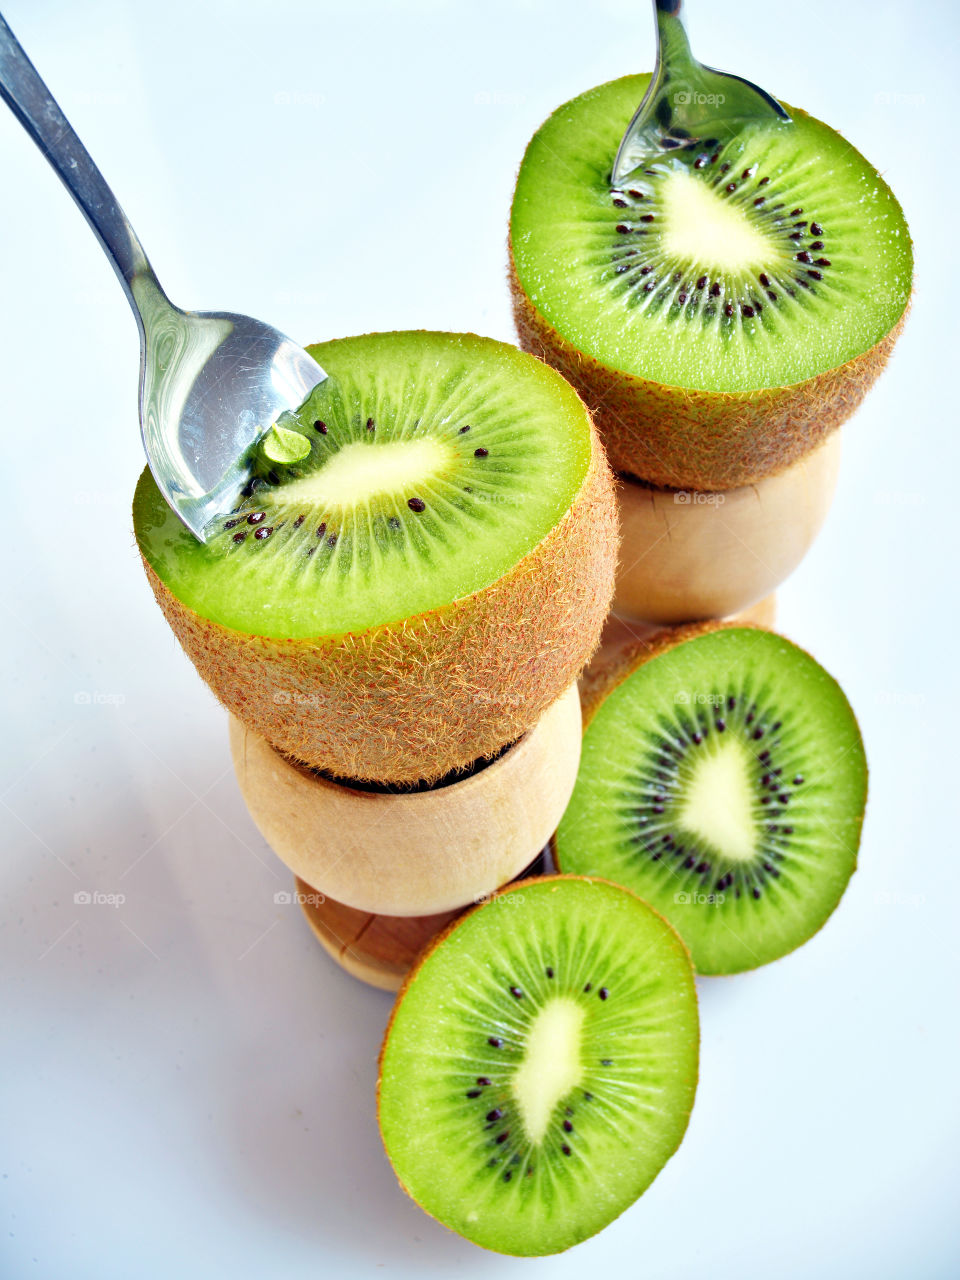 Kiwi fruits against white background